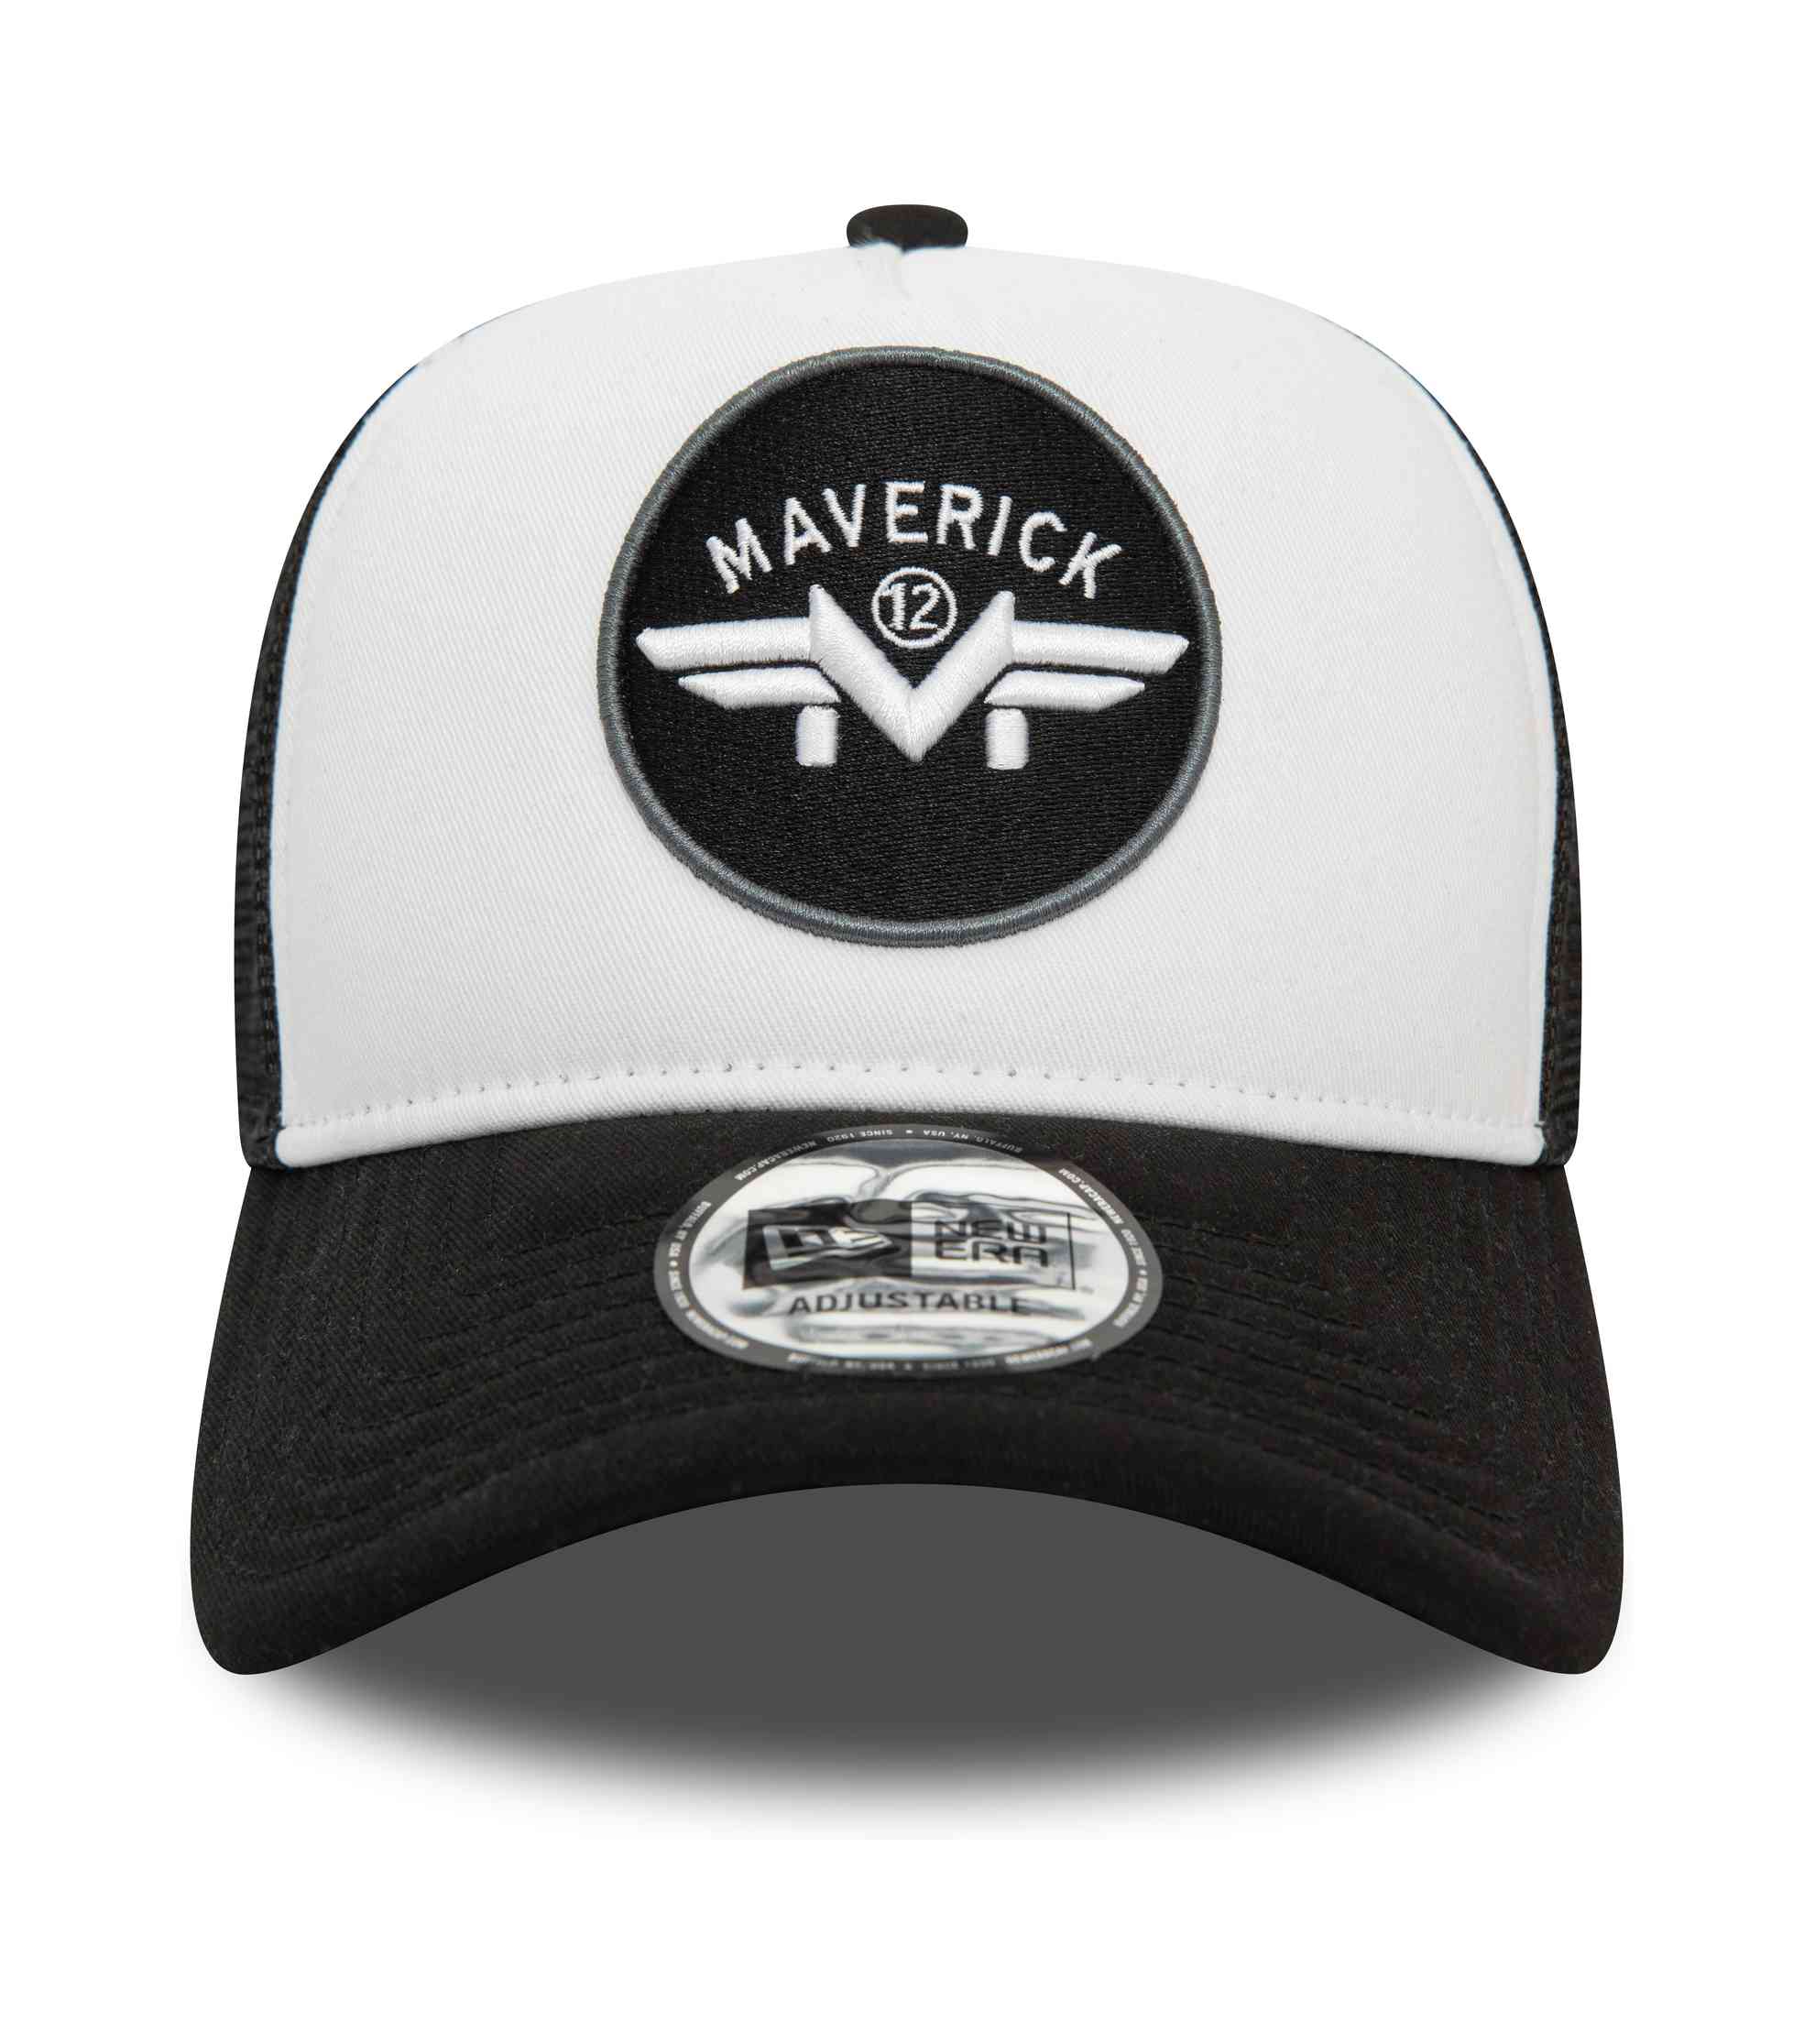 New Era - Aprilia Maverick Patch Trucker Snapback Cap